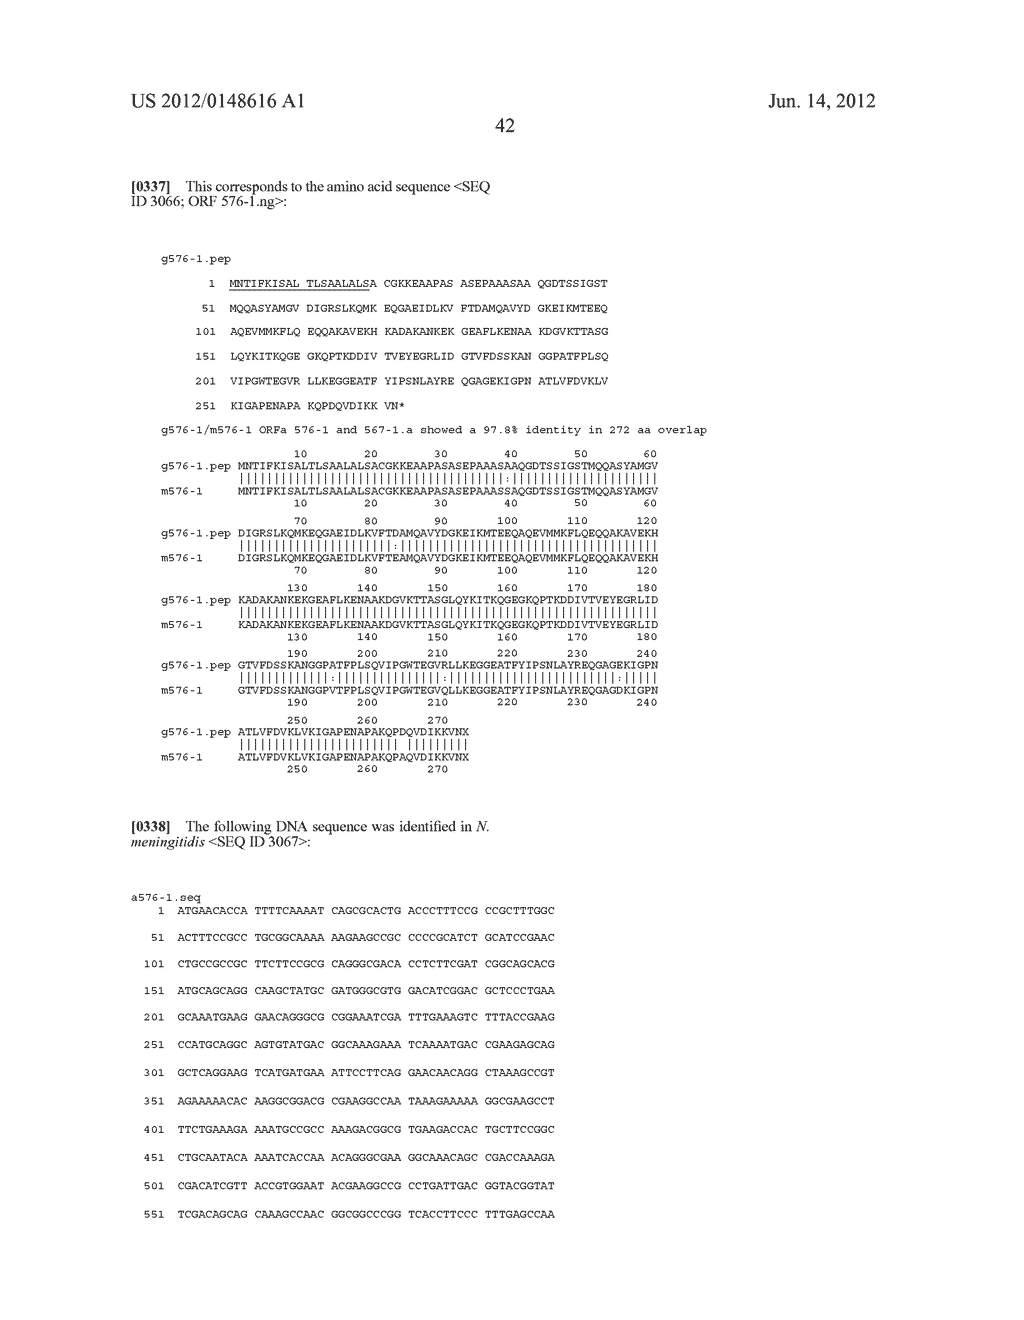 NEISSERIA MENINGITIDIS ANTIGENS AND COMPOSITIONS - diagram, schematic, and image 74